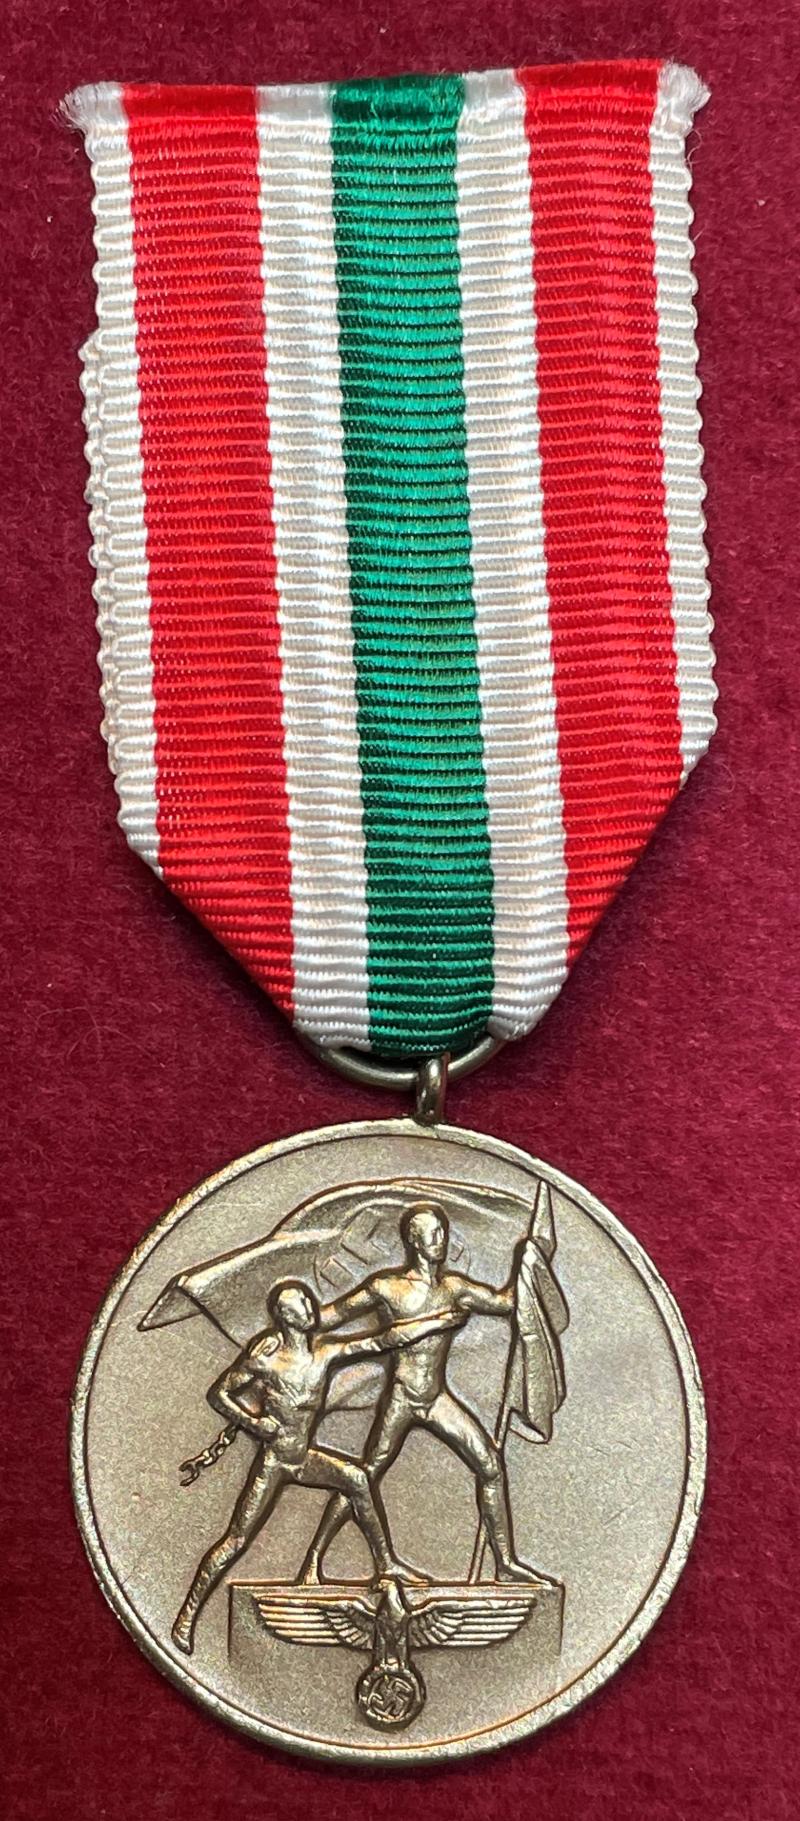 3rd Reich Medaille zur Erinnerung an die Heimkehr des Memellandes